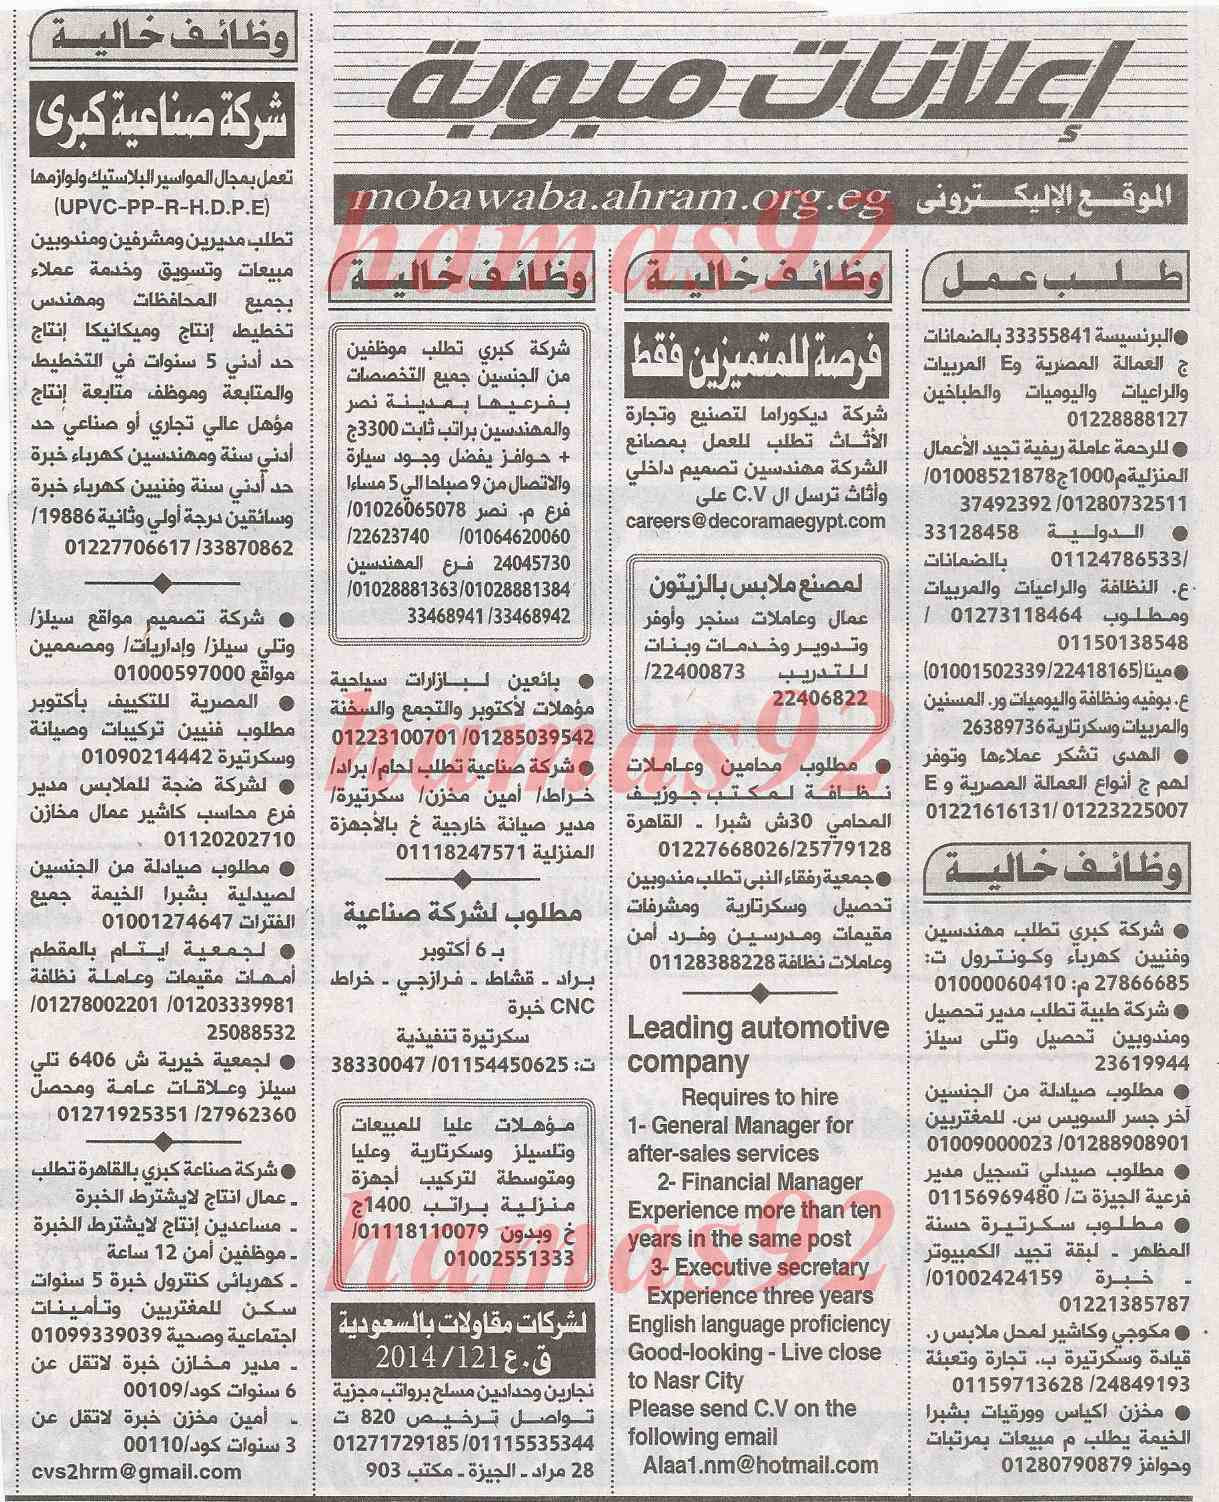 وظائف جريدة الاخبار اليوم الاحد 23-2-2014 , وظائف خالية في مصر الاحد 23 فبراير 2014